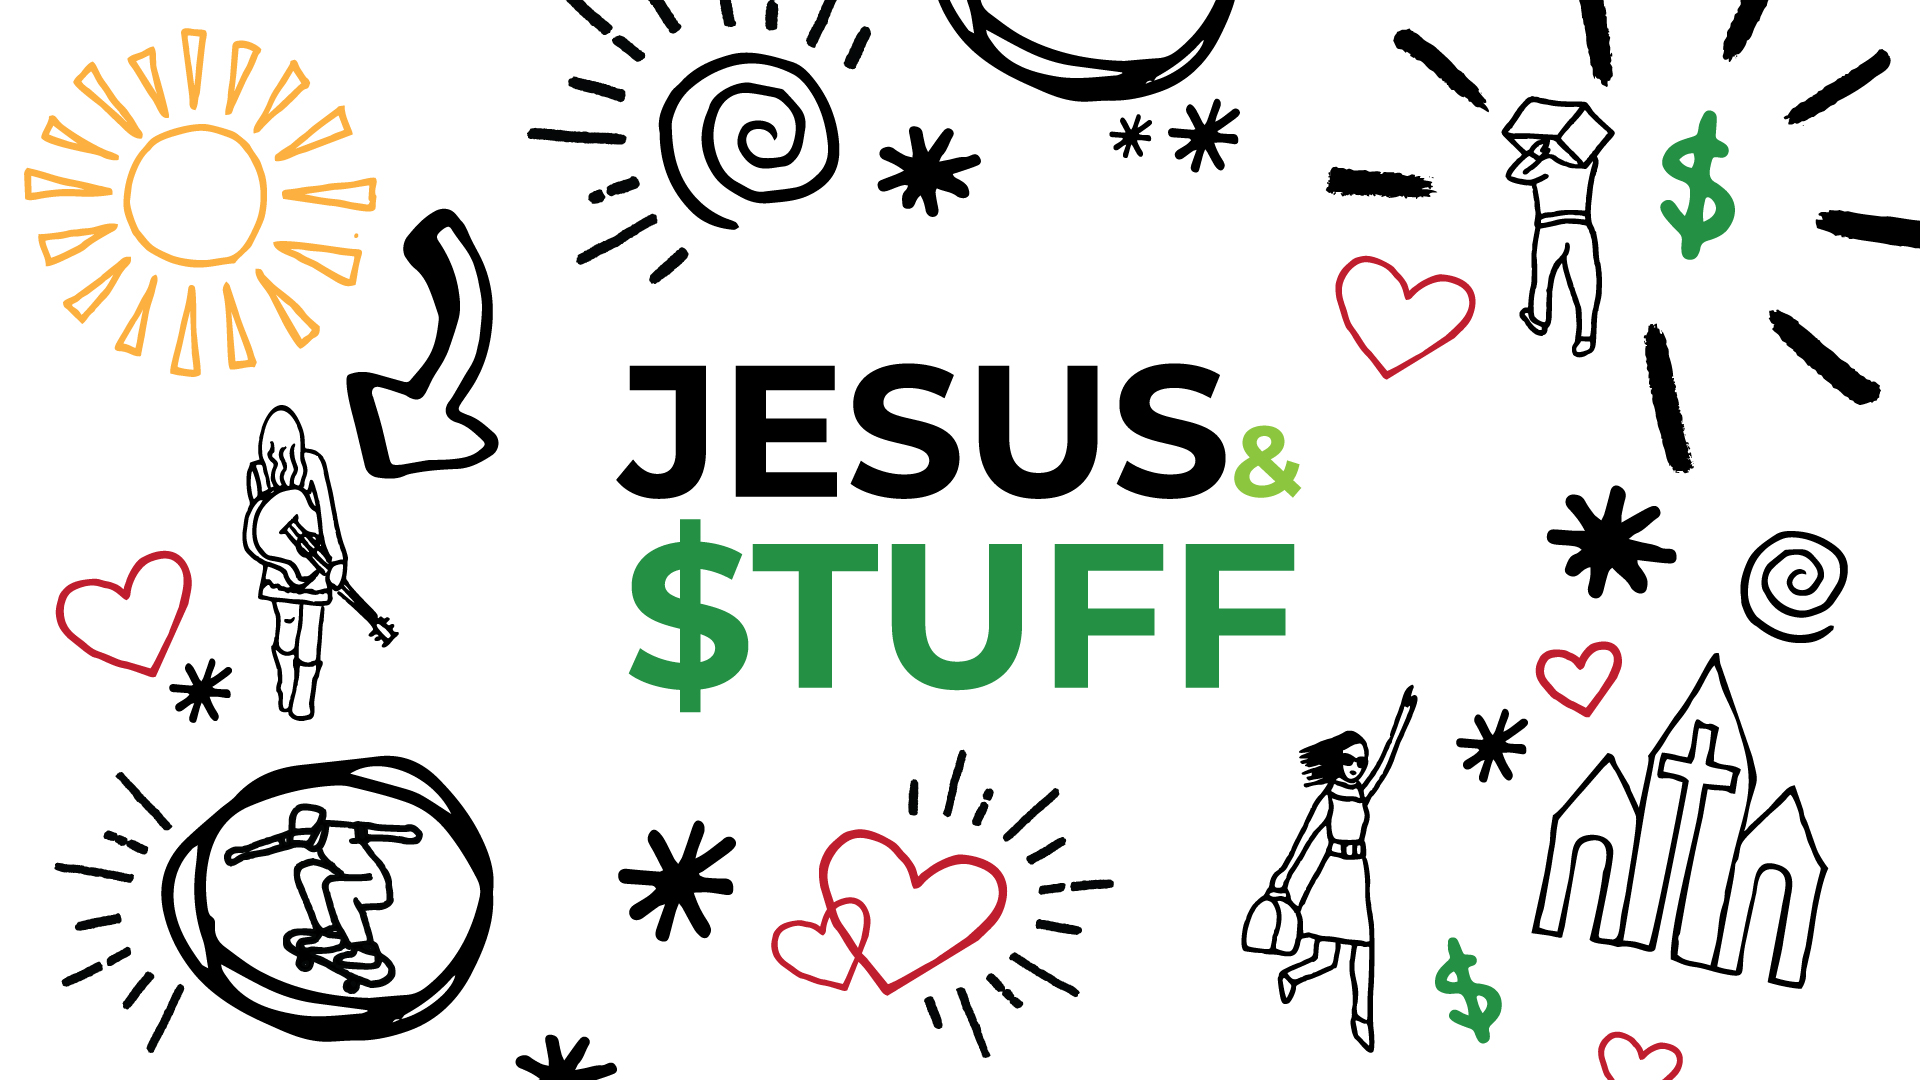 Jesus & $tuff - Part I